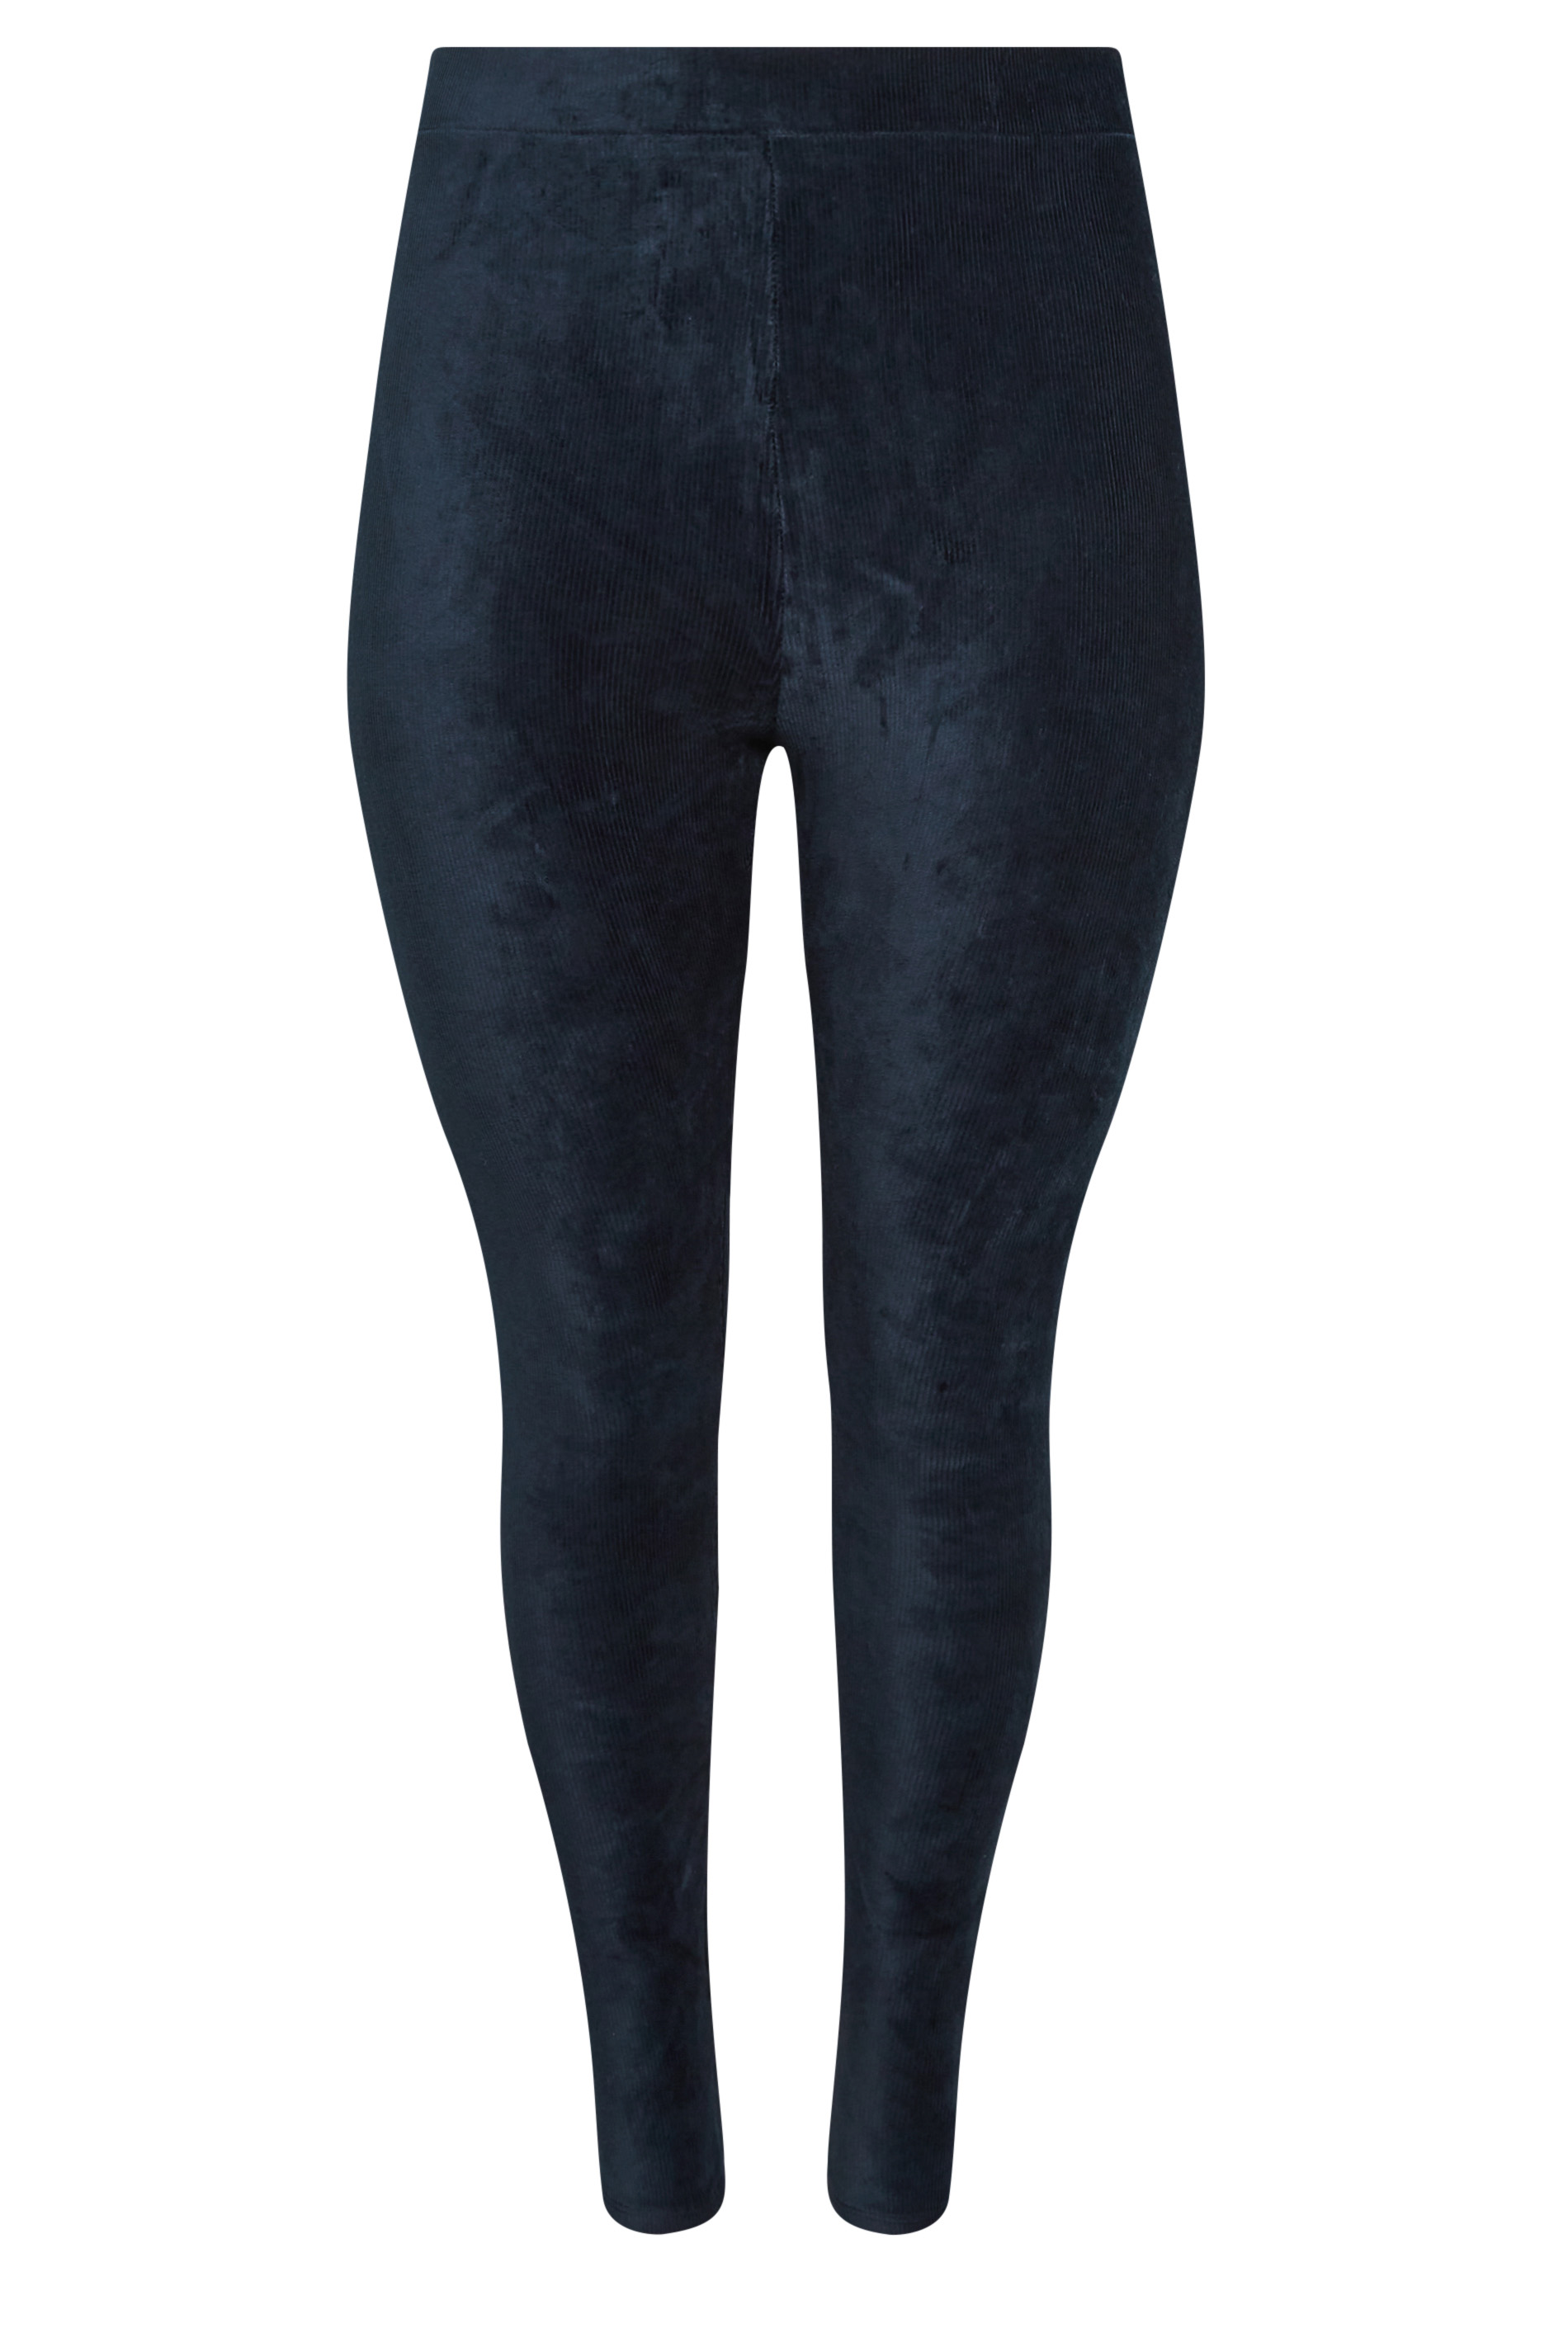 Buy online Navy Blue Velvet Leggings Bottom Wear from winter wear for Women  by Legit Affair for ₹999 at 51% off | 2024 Limeroad.com